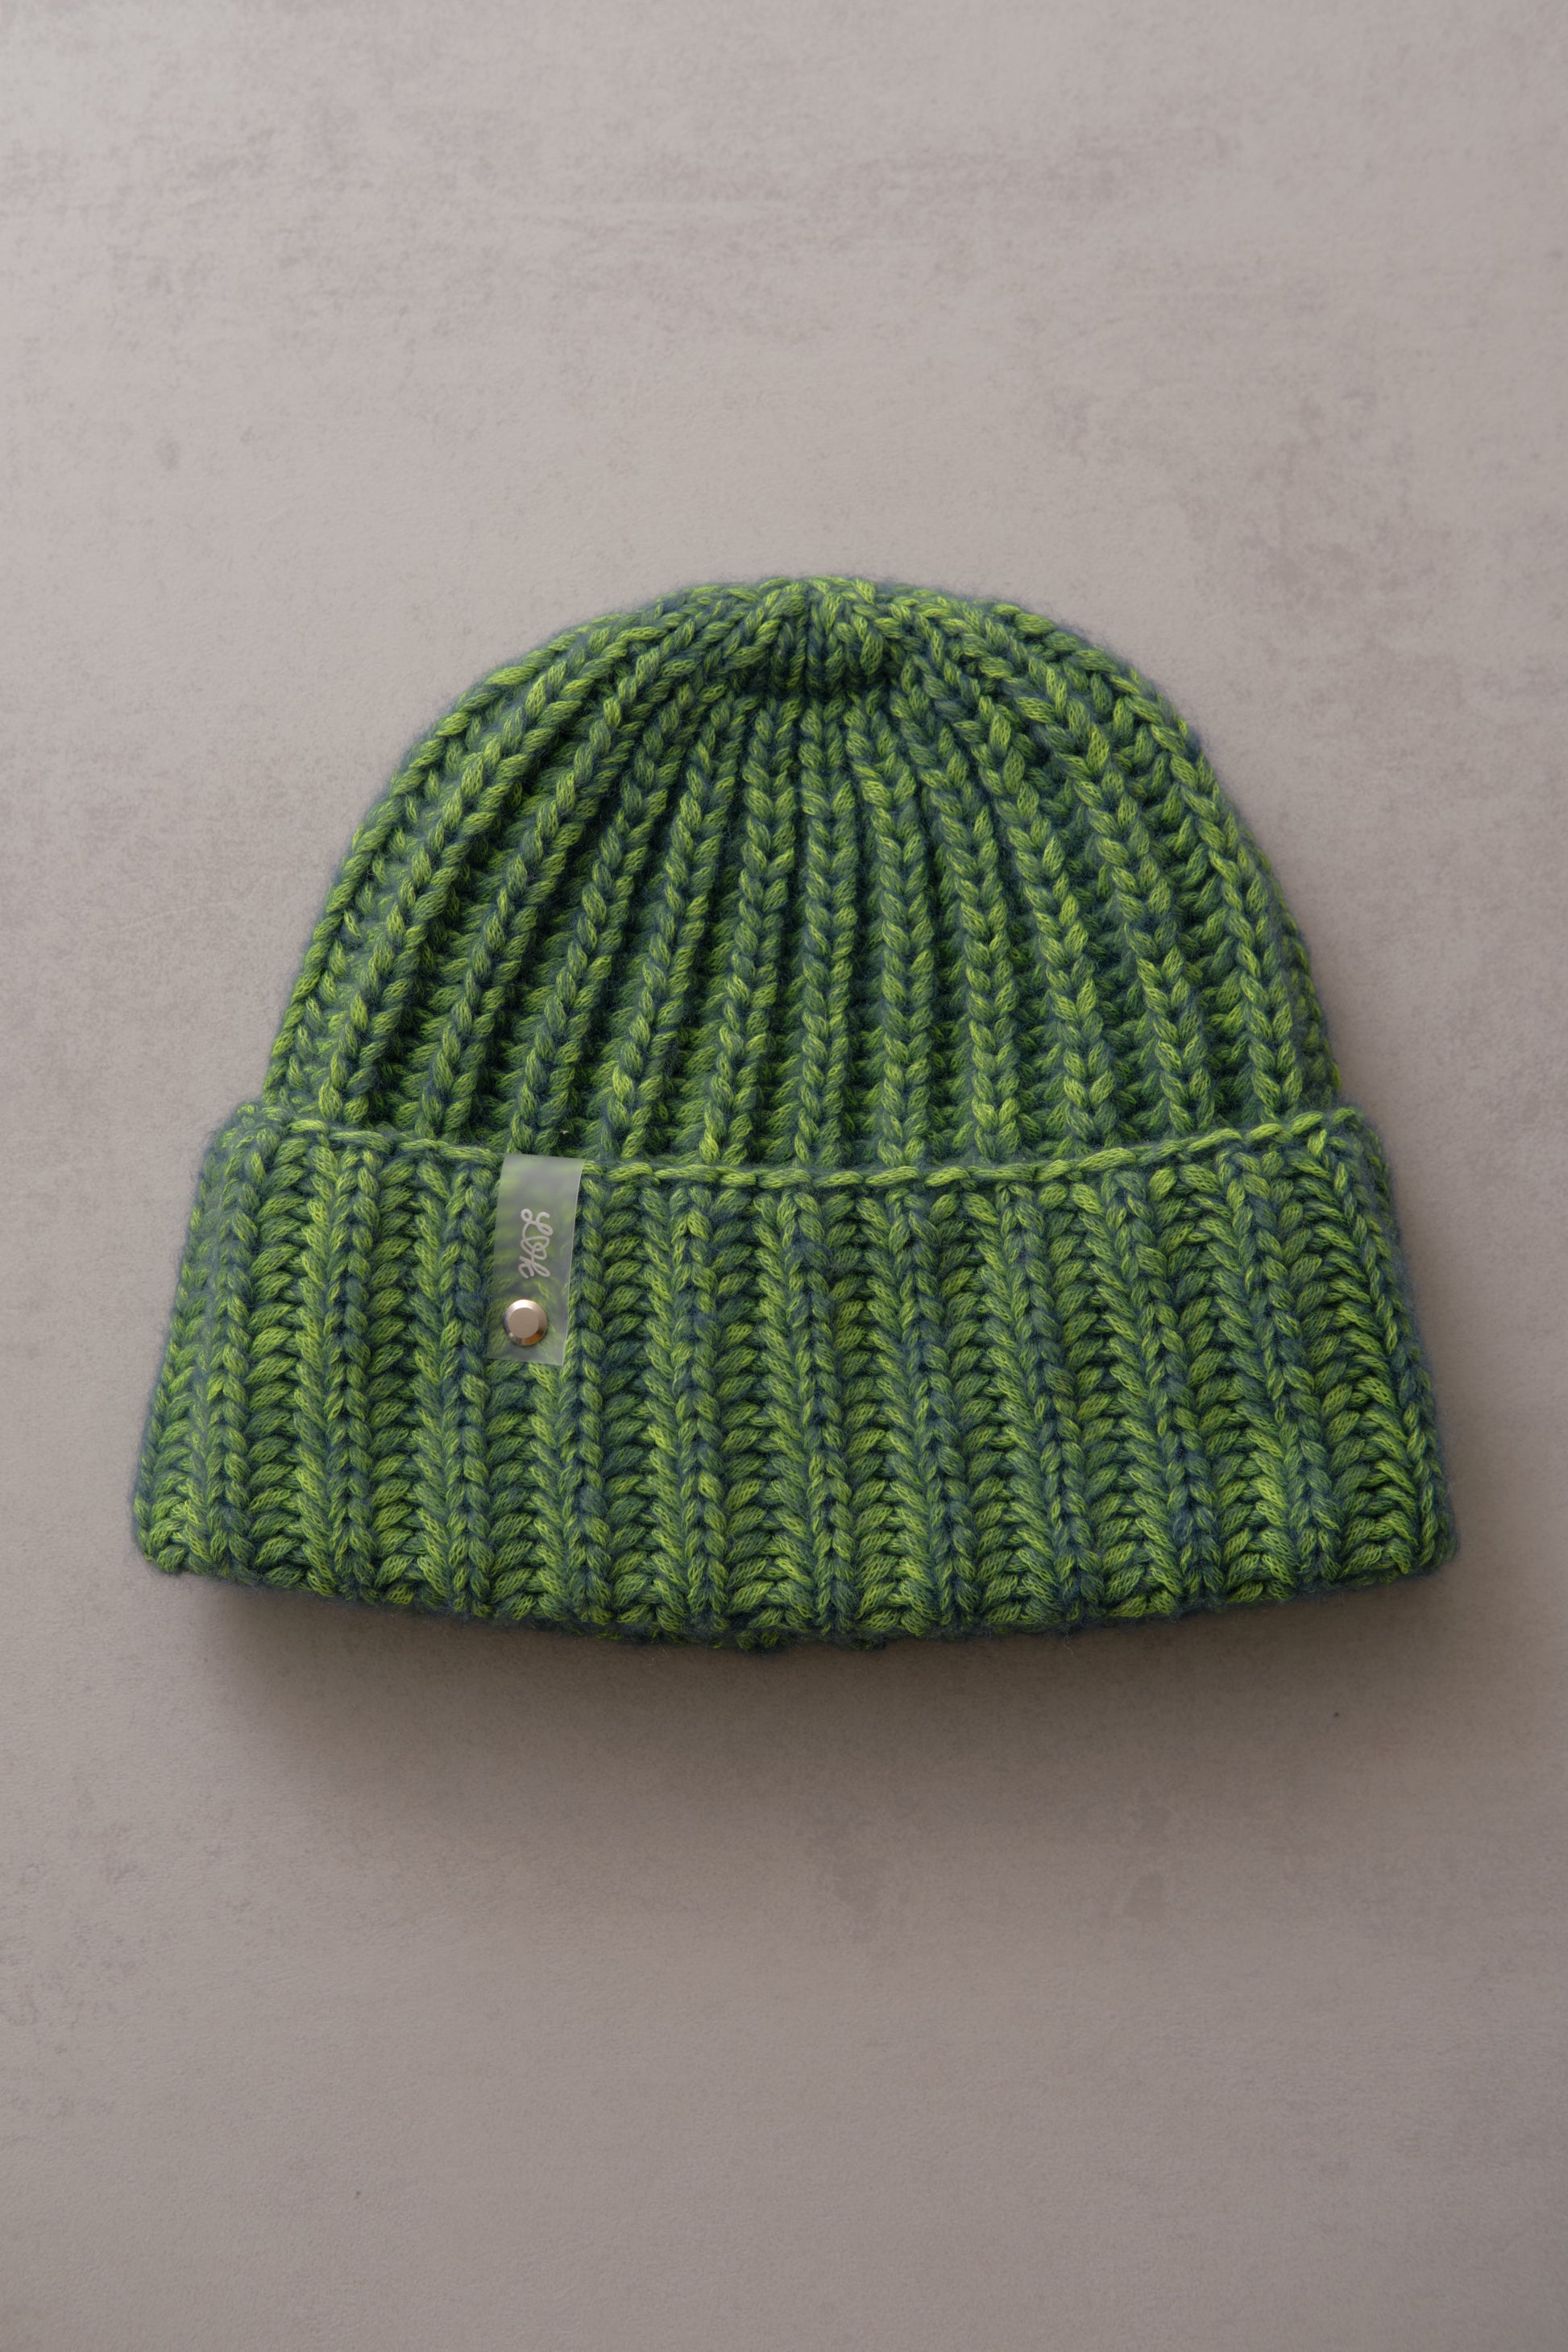 Hand-knitted hat in – lenalovesknitting colors neon